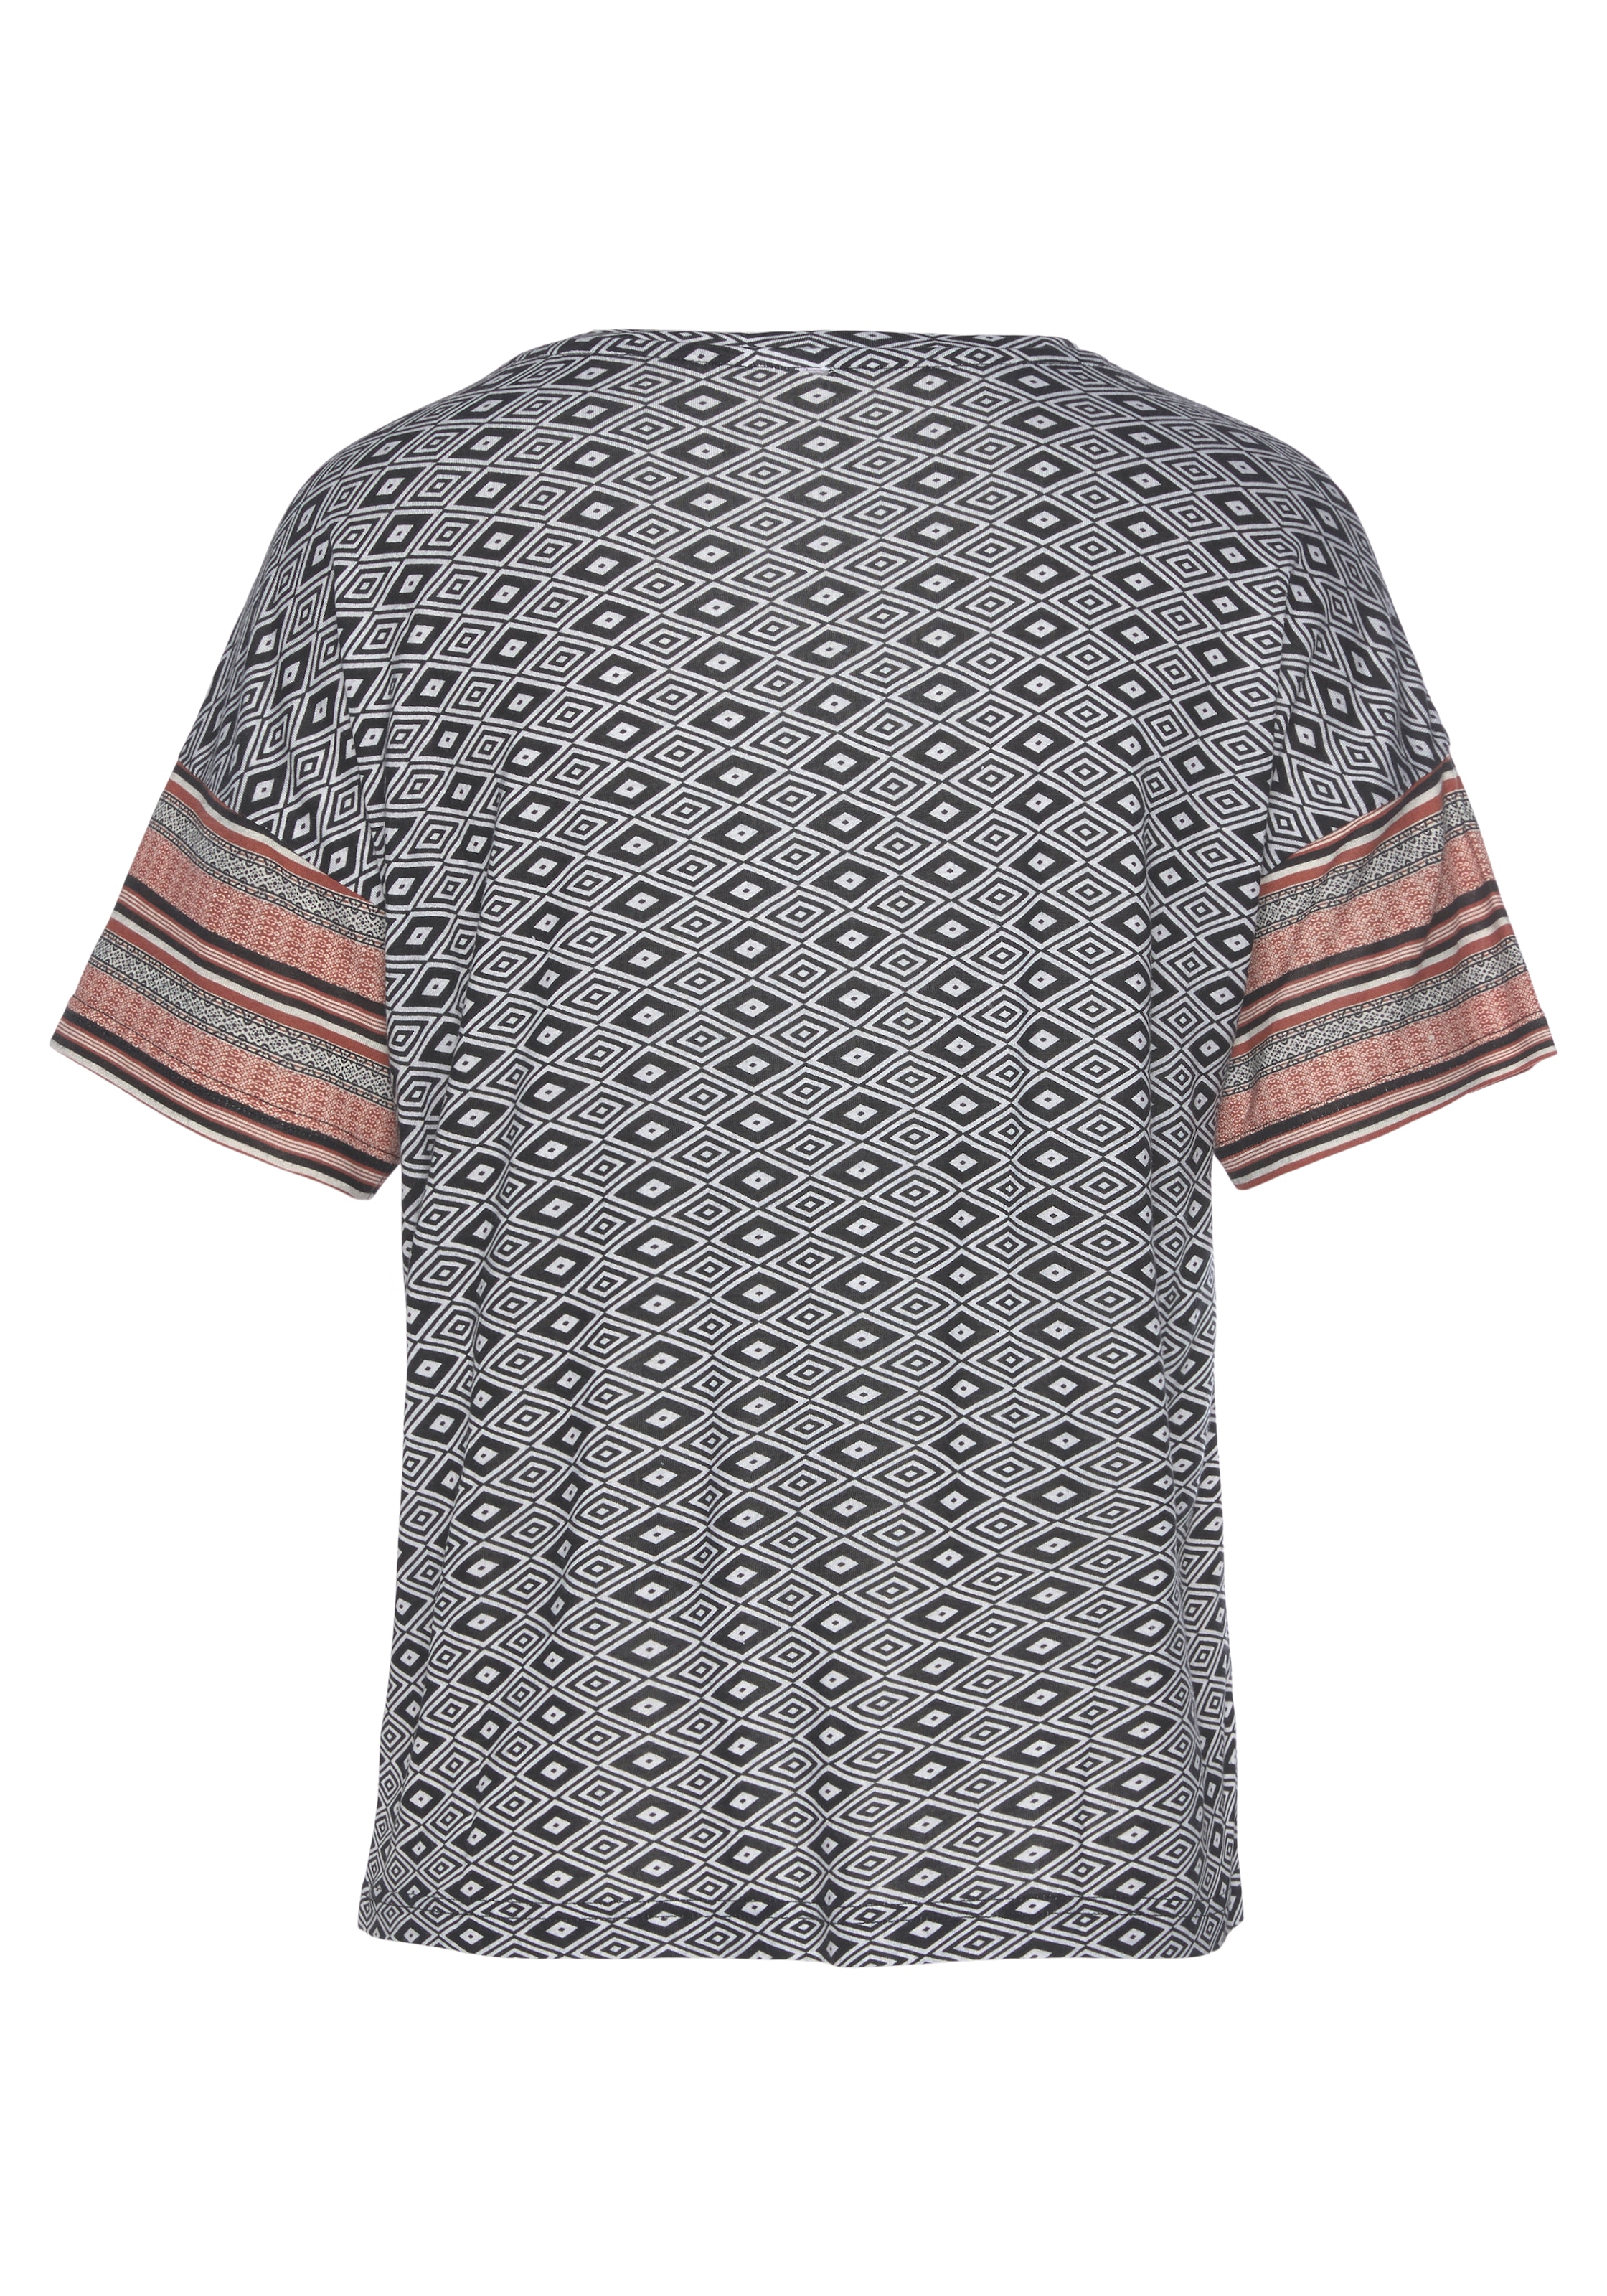 Vivance Dreams T-Shirt, in schönem Ethno-Design kaufen im OTTO Online Shop